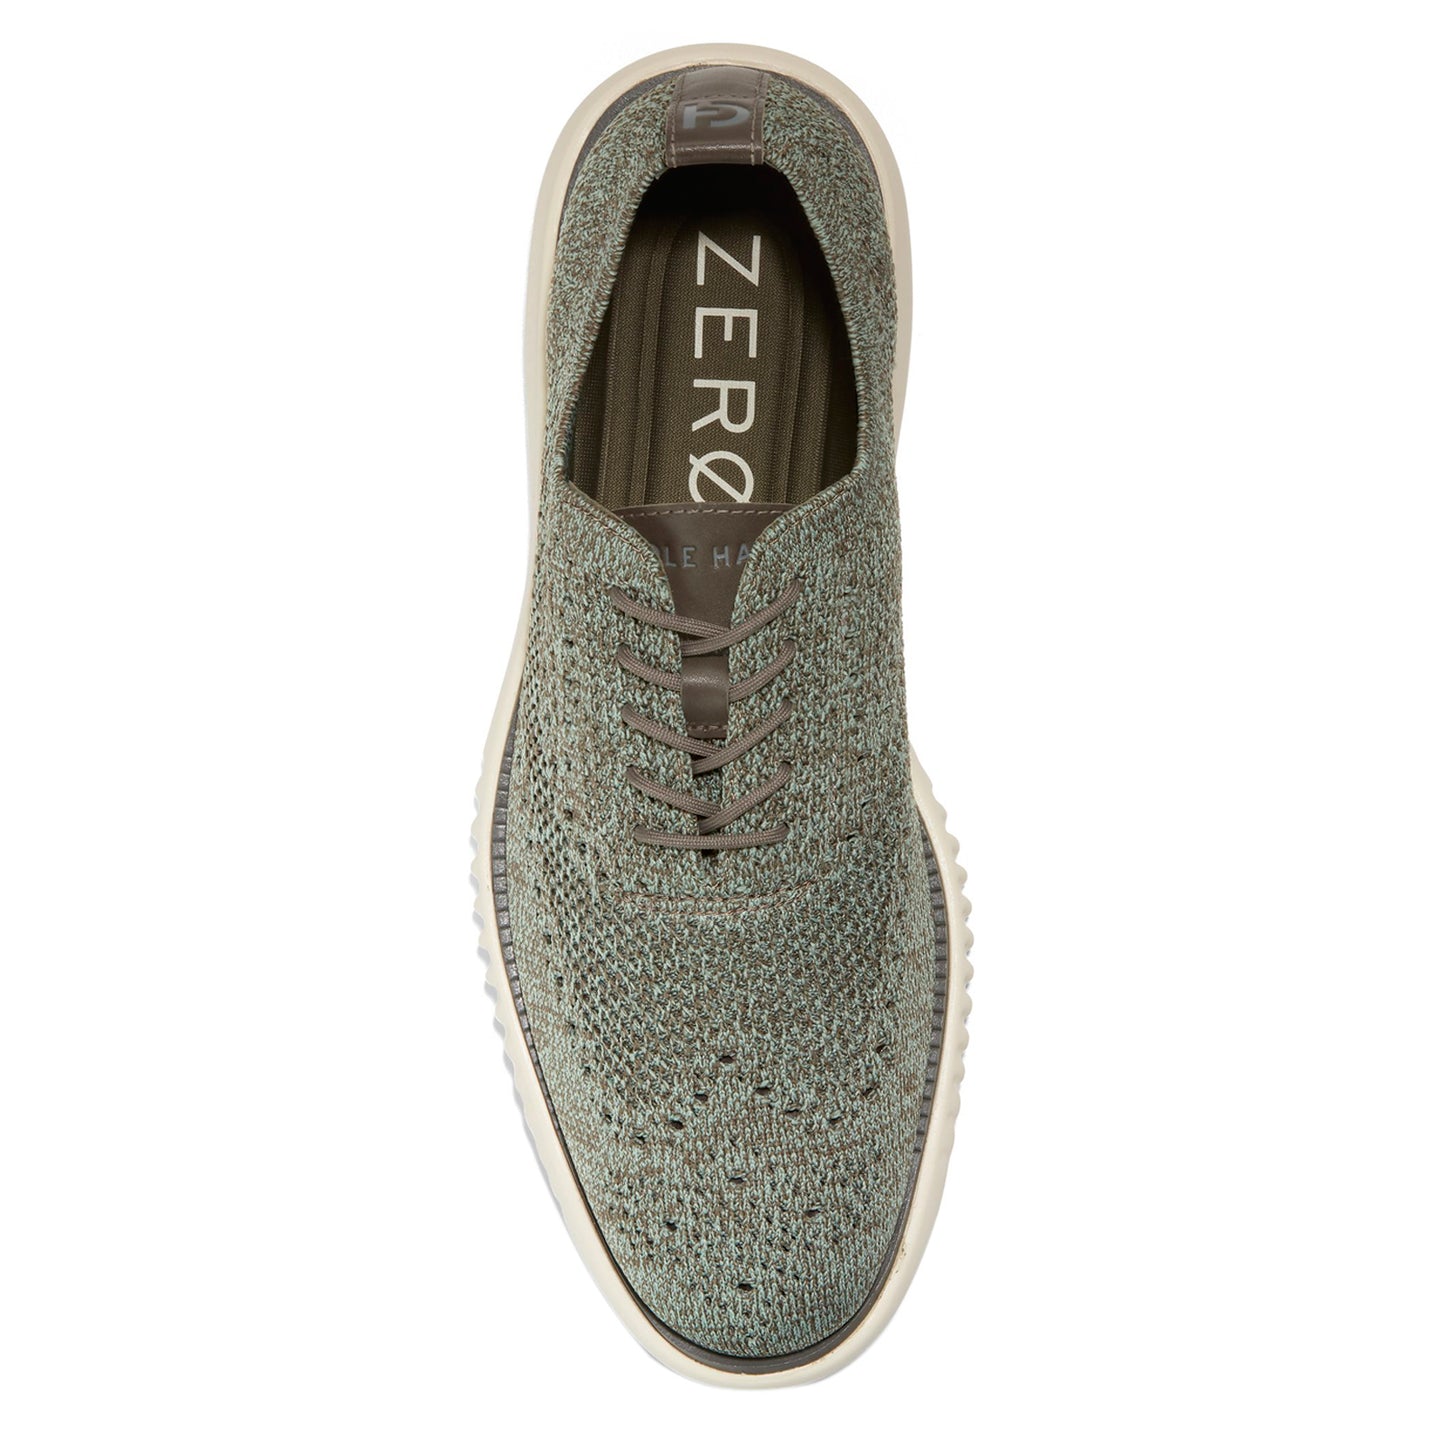 Peltz Shoes  Men's Cole Haan 2.ZER0GRAND Wingtip Oxford Deep Olive C37800